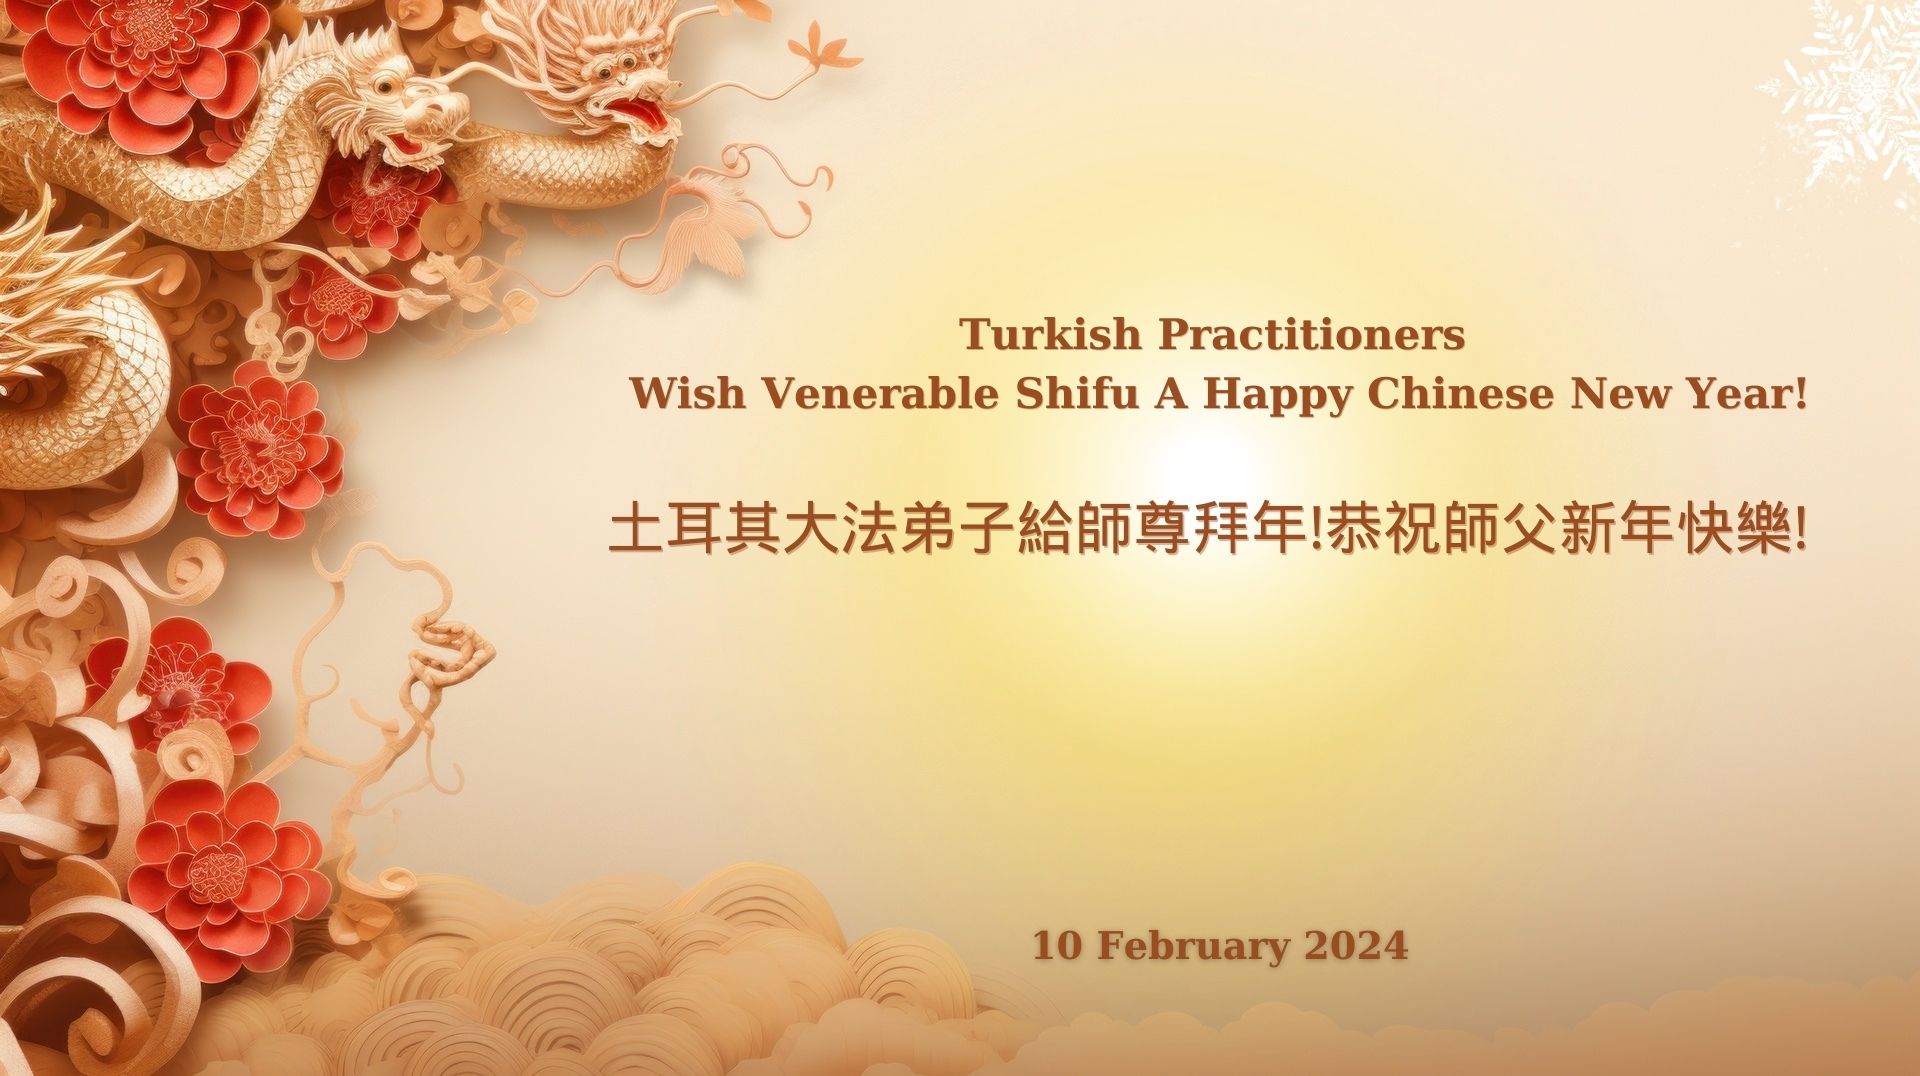 Image for article Türkiye'deki Uygulayıcılar Saygıdeğer Shifu Li'nin 2024 Çin Yeni Yılını Kutluyorlar!